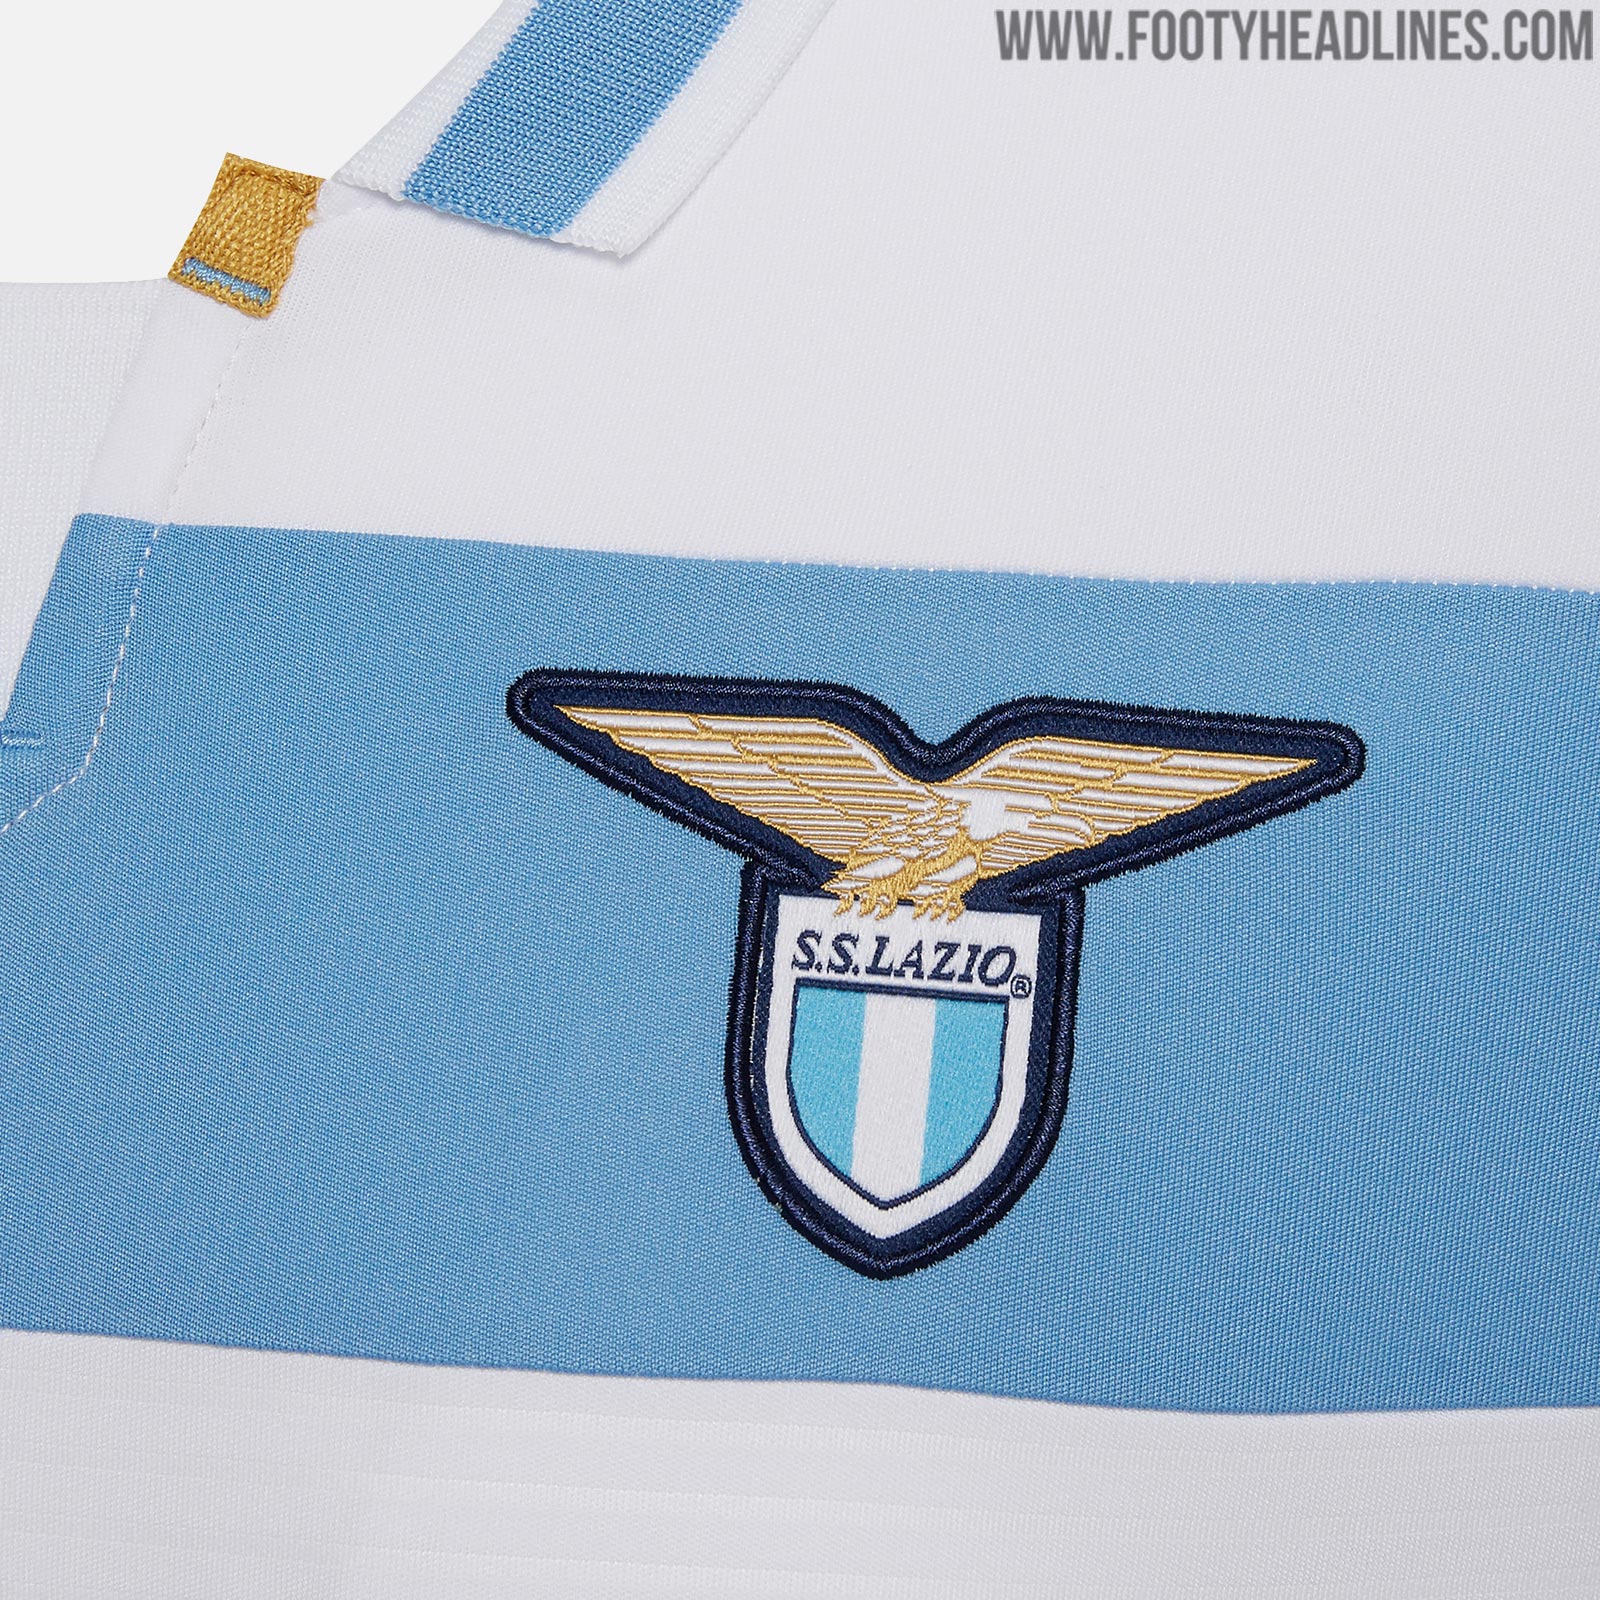 Lazio 18-19 Away / Europa League Kit Released - Footy Headlines